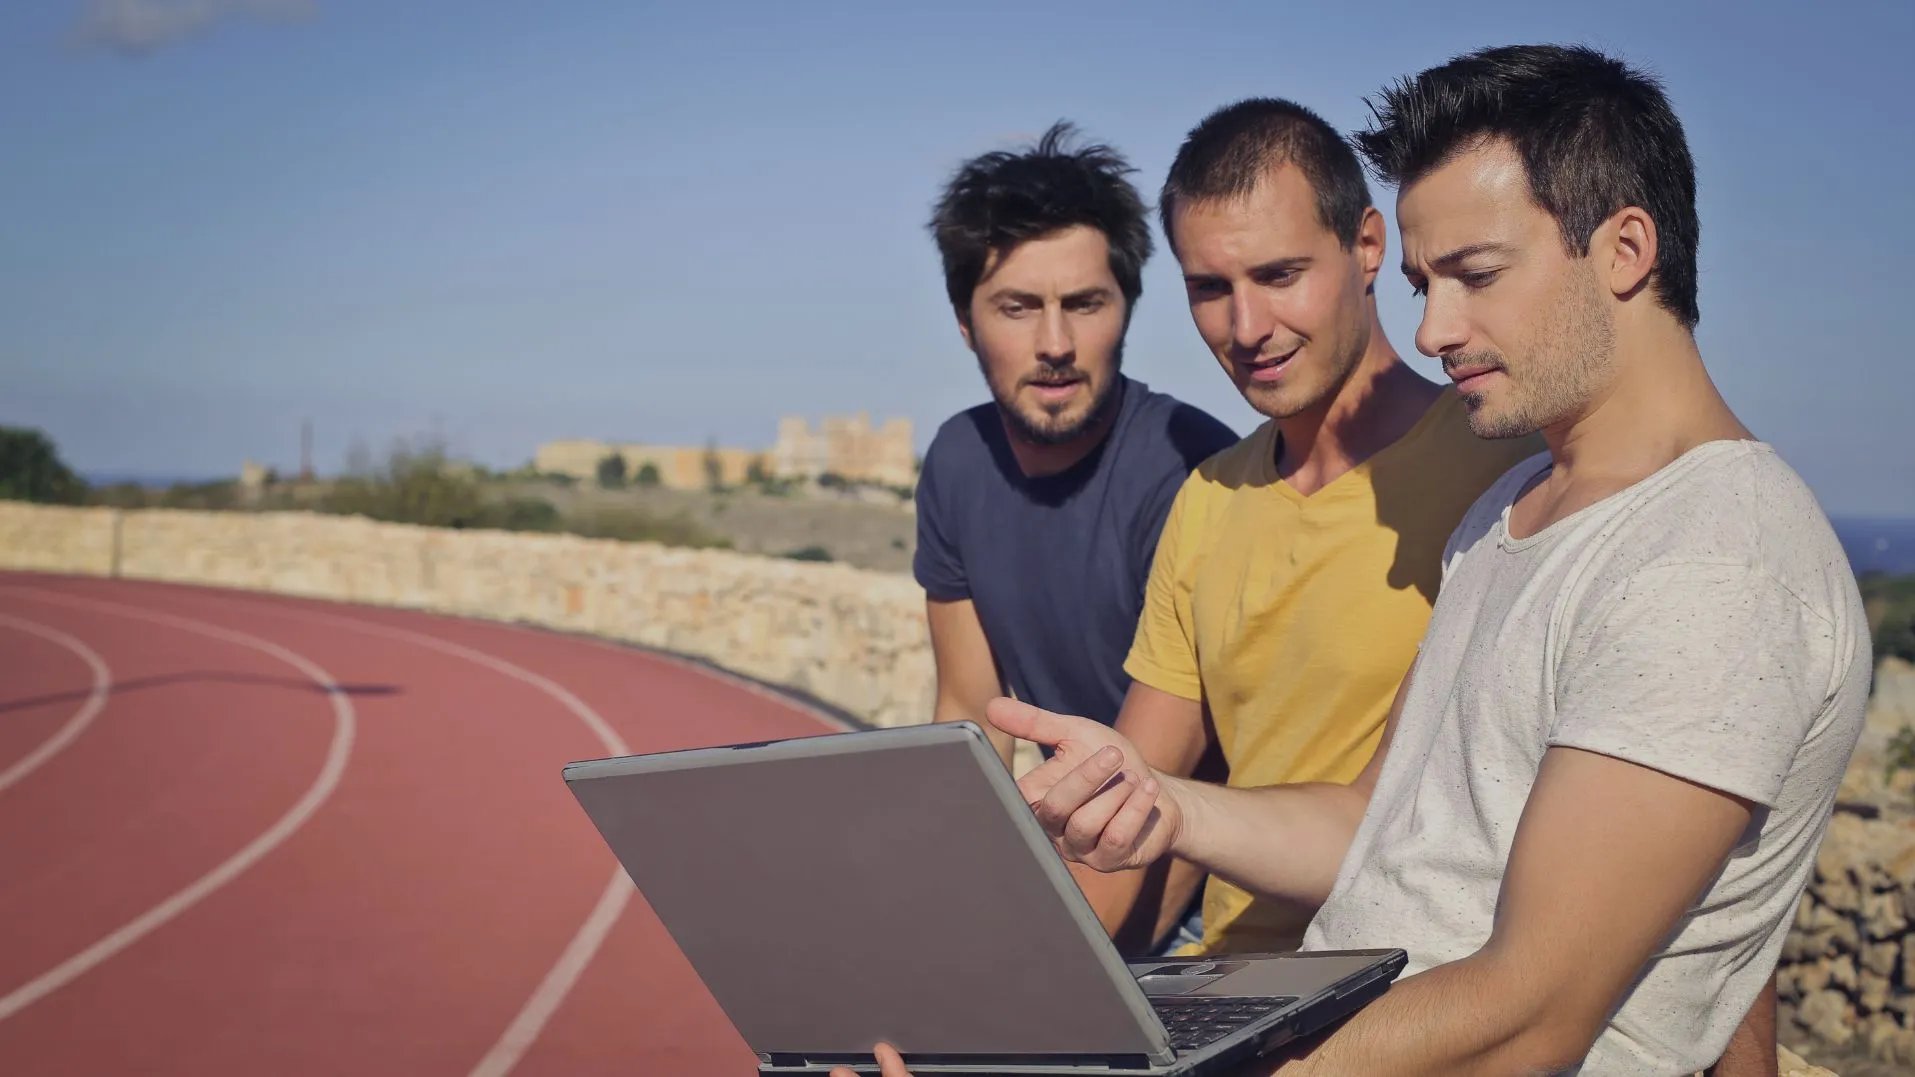 Drei Männer sitzen am Rand einer Laufbahn vor einem Computer